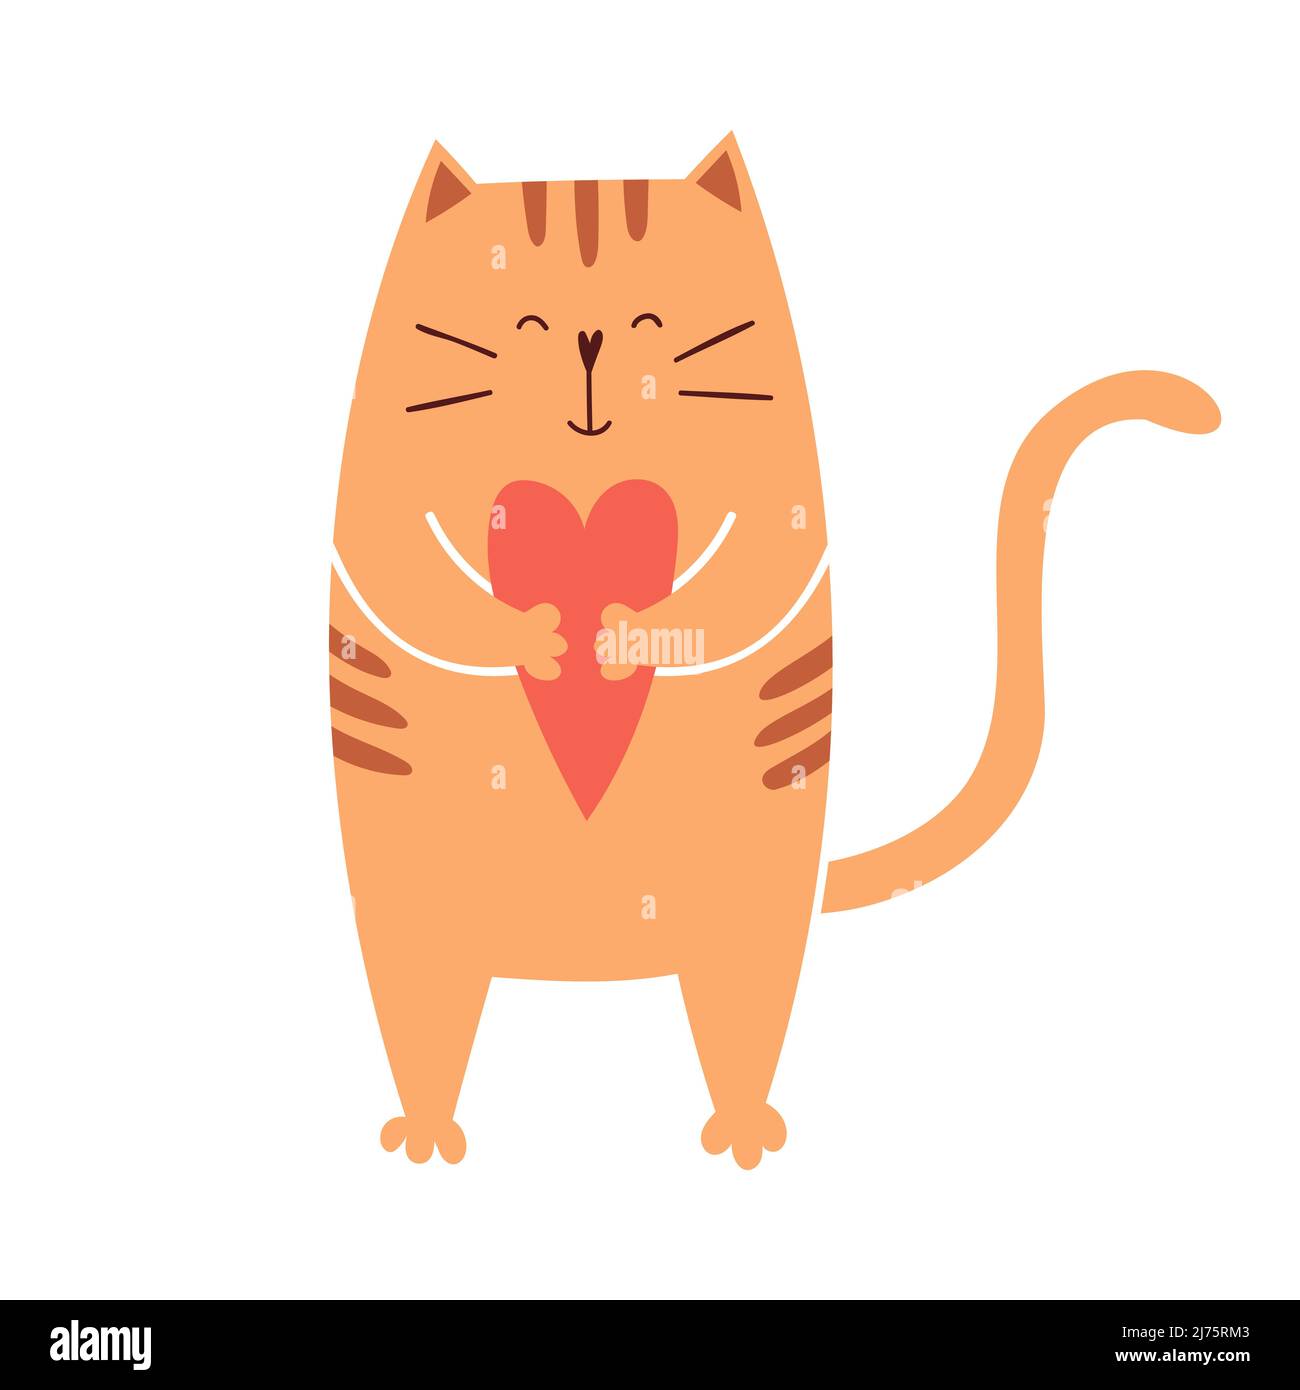 Un carino gatto cartoon tiene un cuore nelle sue zampe e sorrisi. Buon personaggio adorabile per le carte San Valentino. Illustrazione vettoriale isolata su un bianco Illustrazione Vettoriale